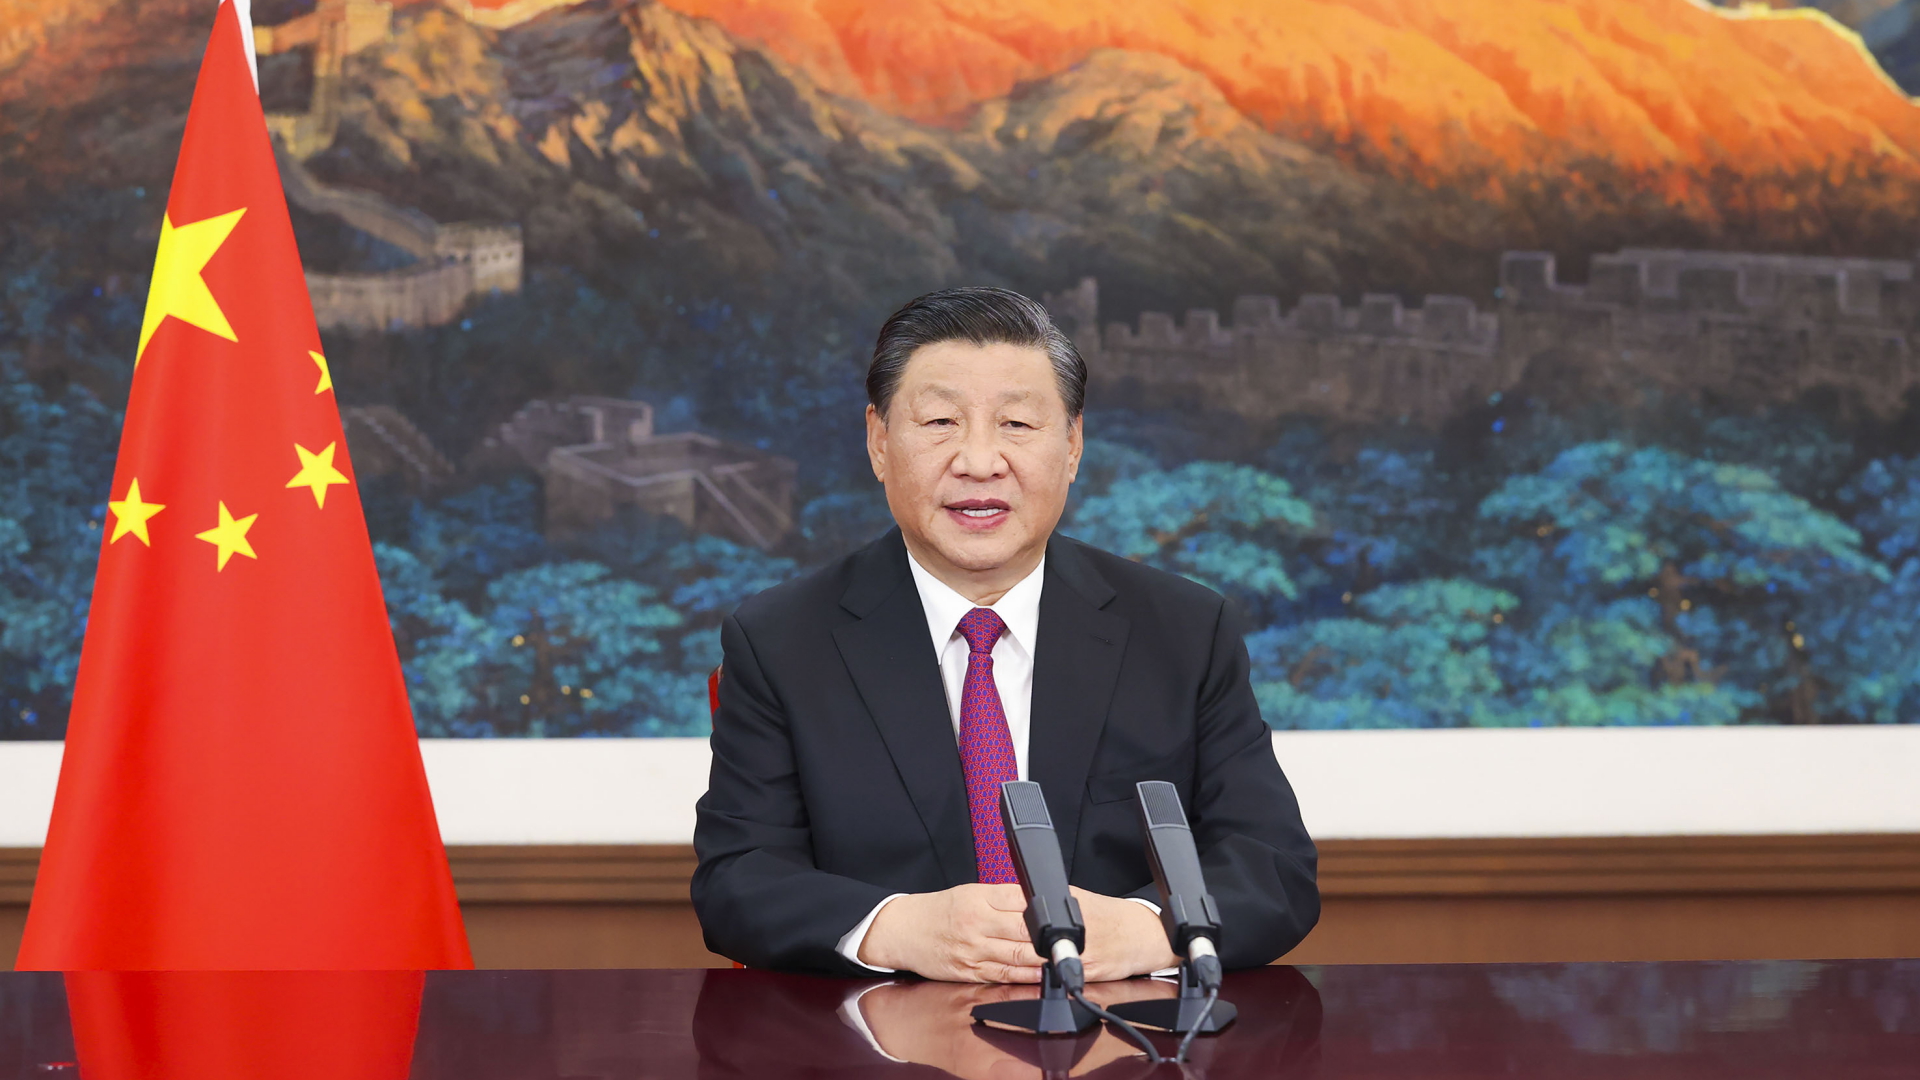 Xi Jinping bei einer Ansprache anlässlich einer Handelsmesse | AP